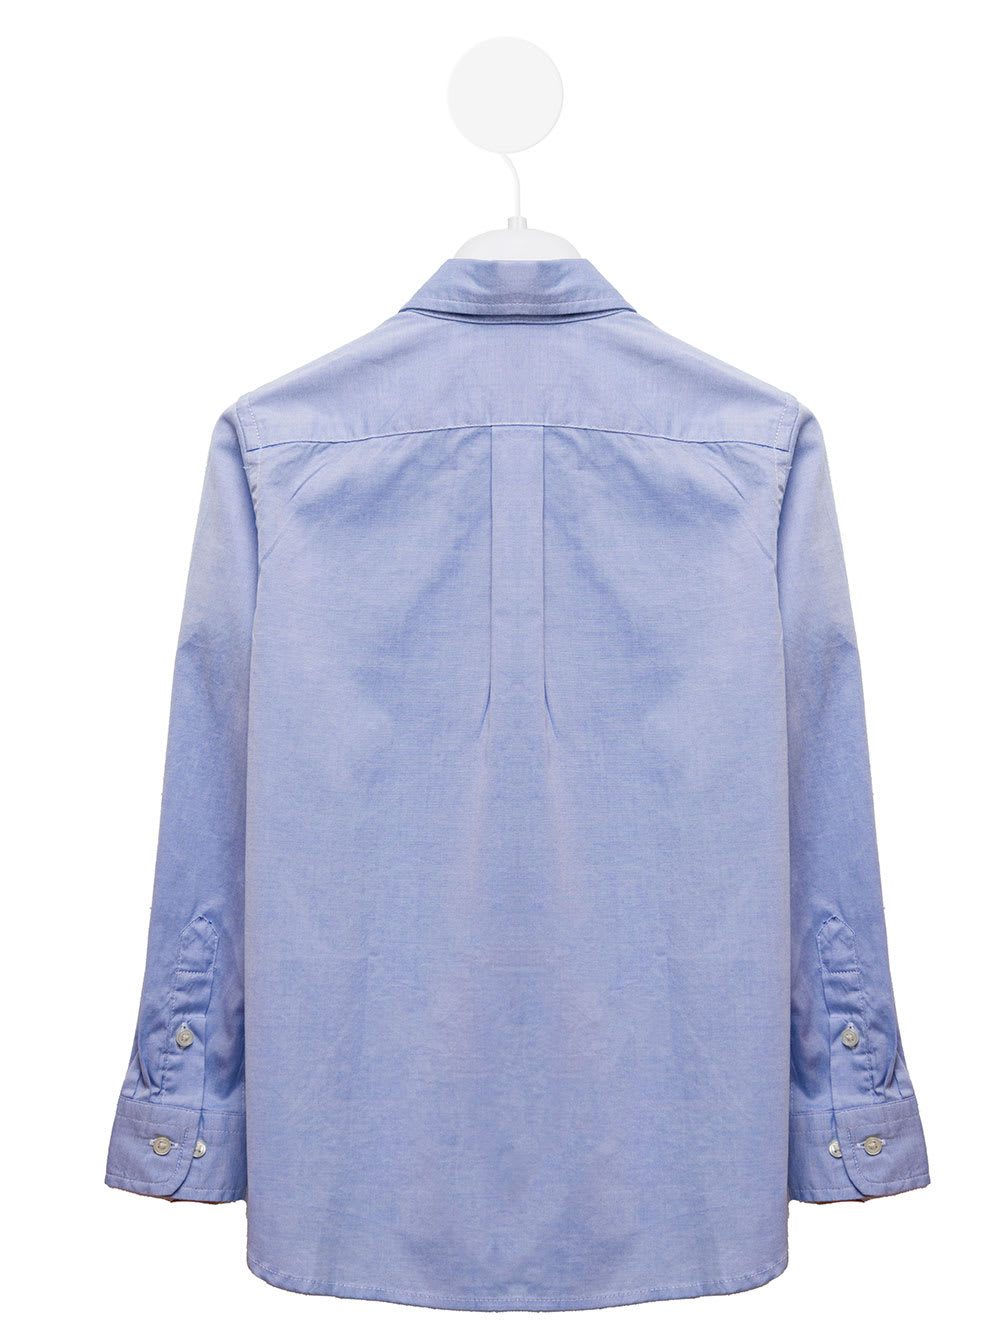 Shop Ralph Lauren Light Blue Cotton Poplin Shirt With Logo Kids Boy